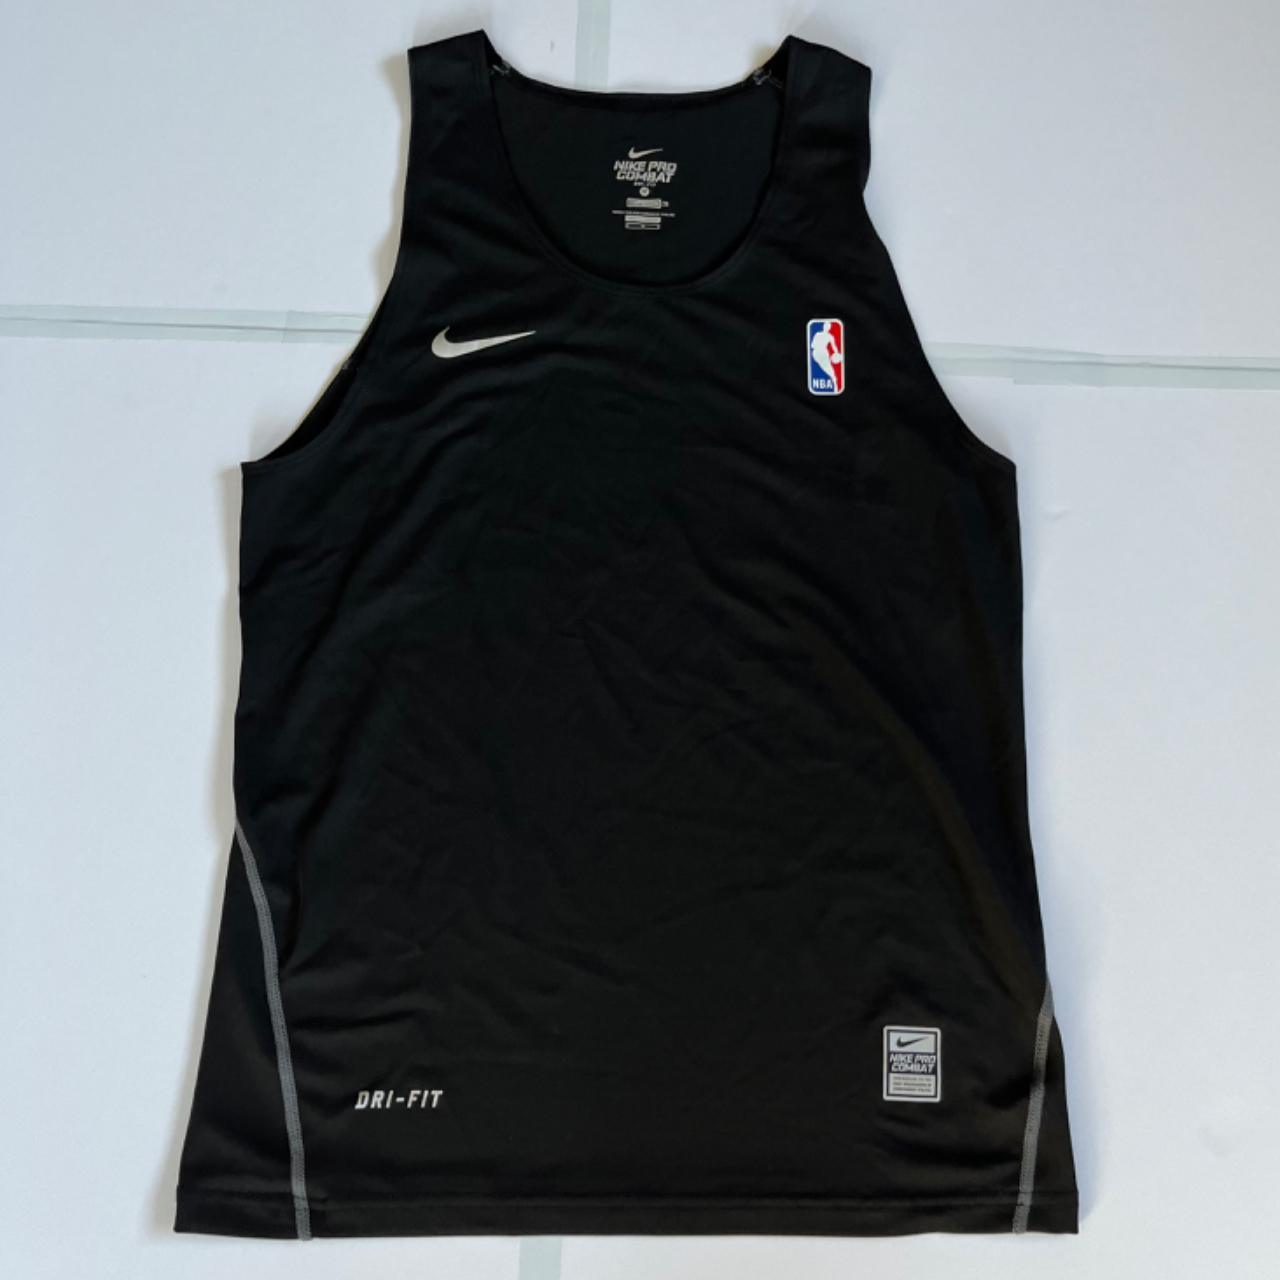 Nike NBA dri fit compression pro combat vest muscle... - Depop